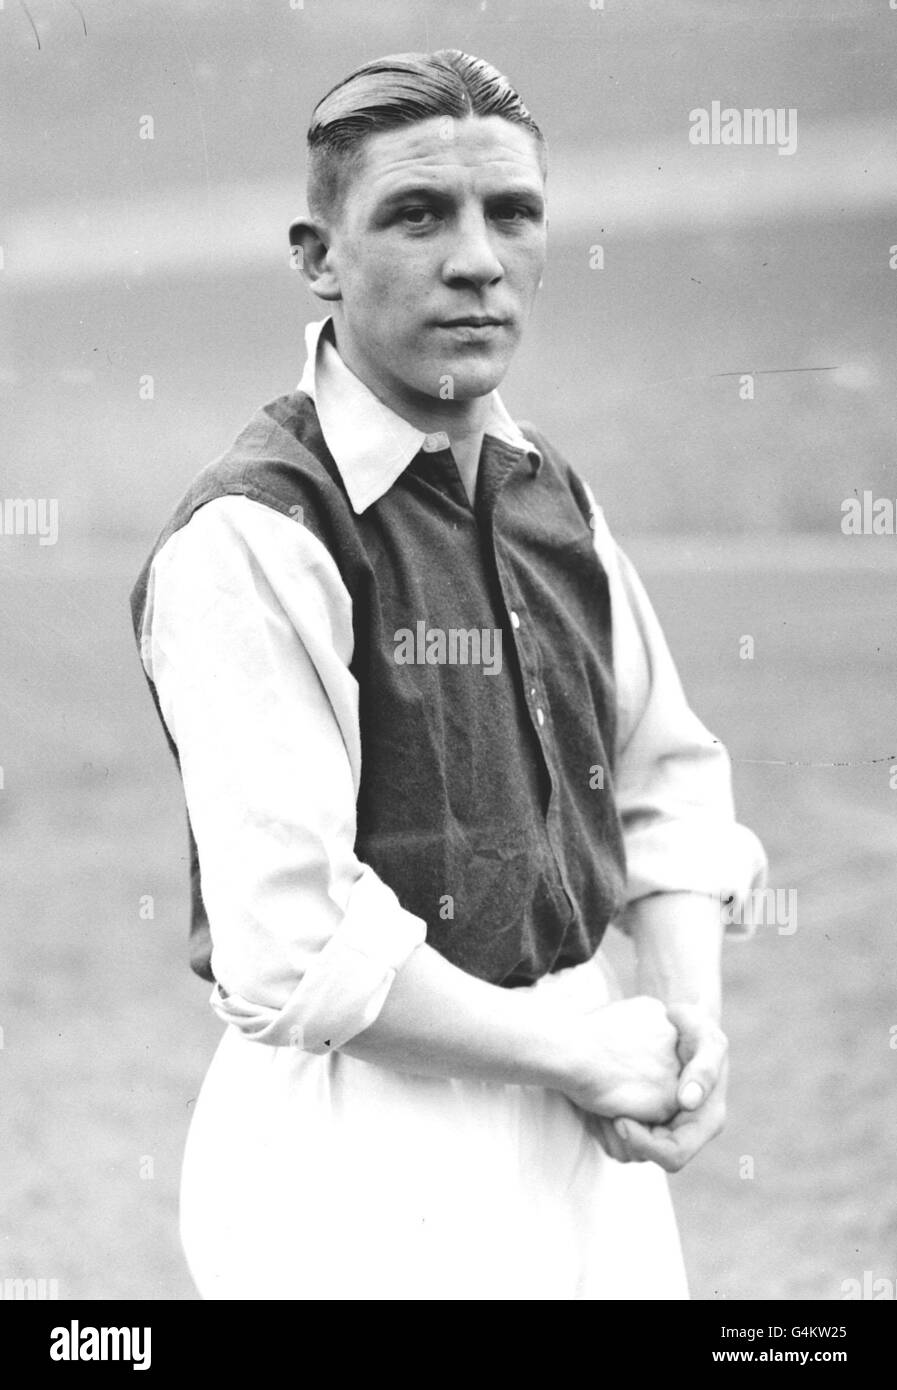 30 MAGGIO : in questo giorno nel 1995 muore il calciatore di legendry Ted Drake. Calciatore Ted Drake of Arsenal, 1934. Foto Stock